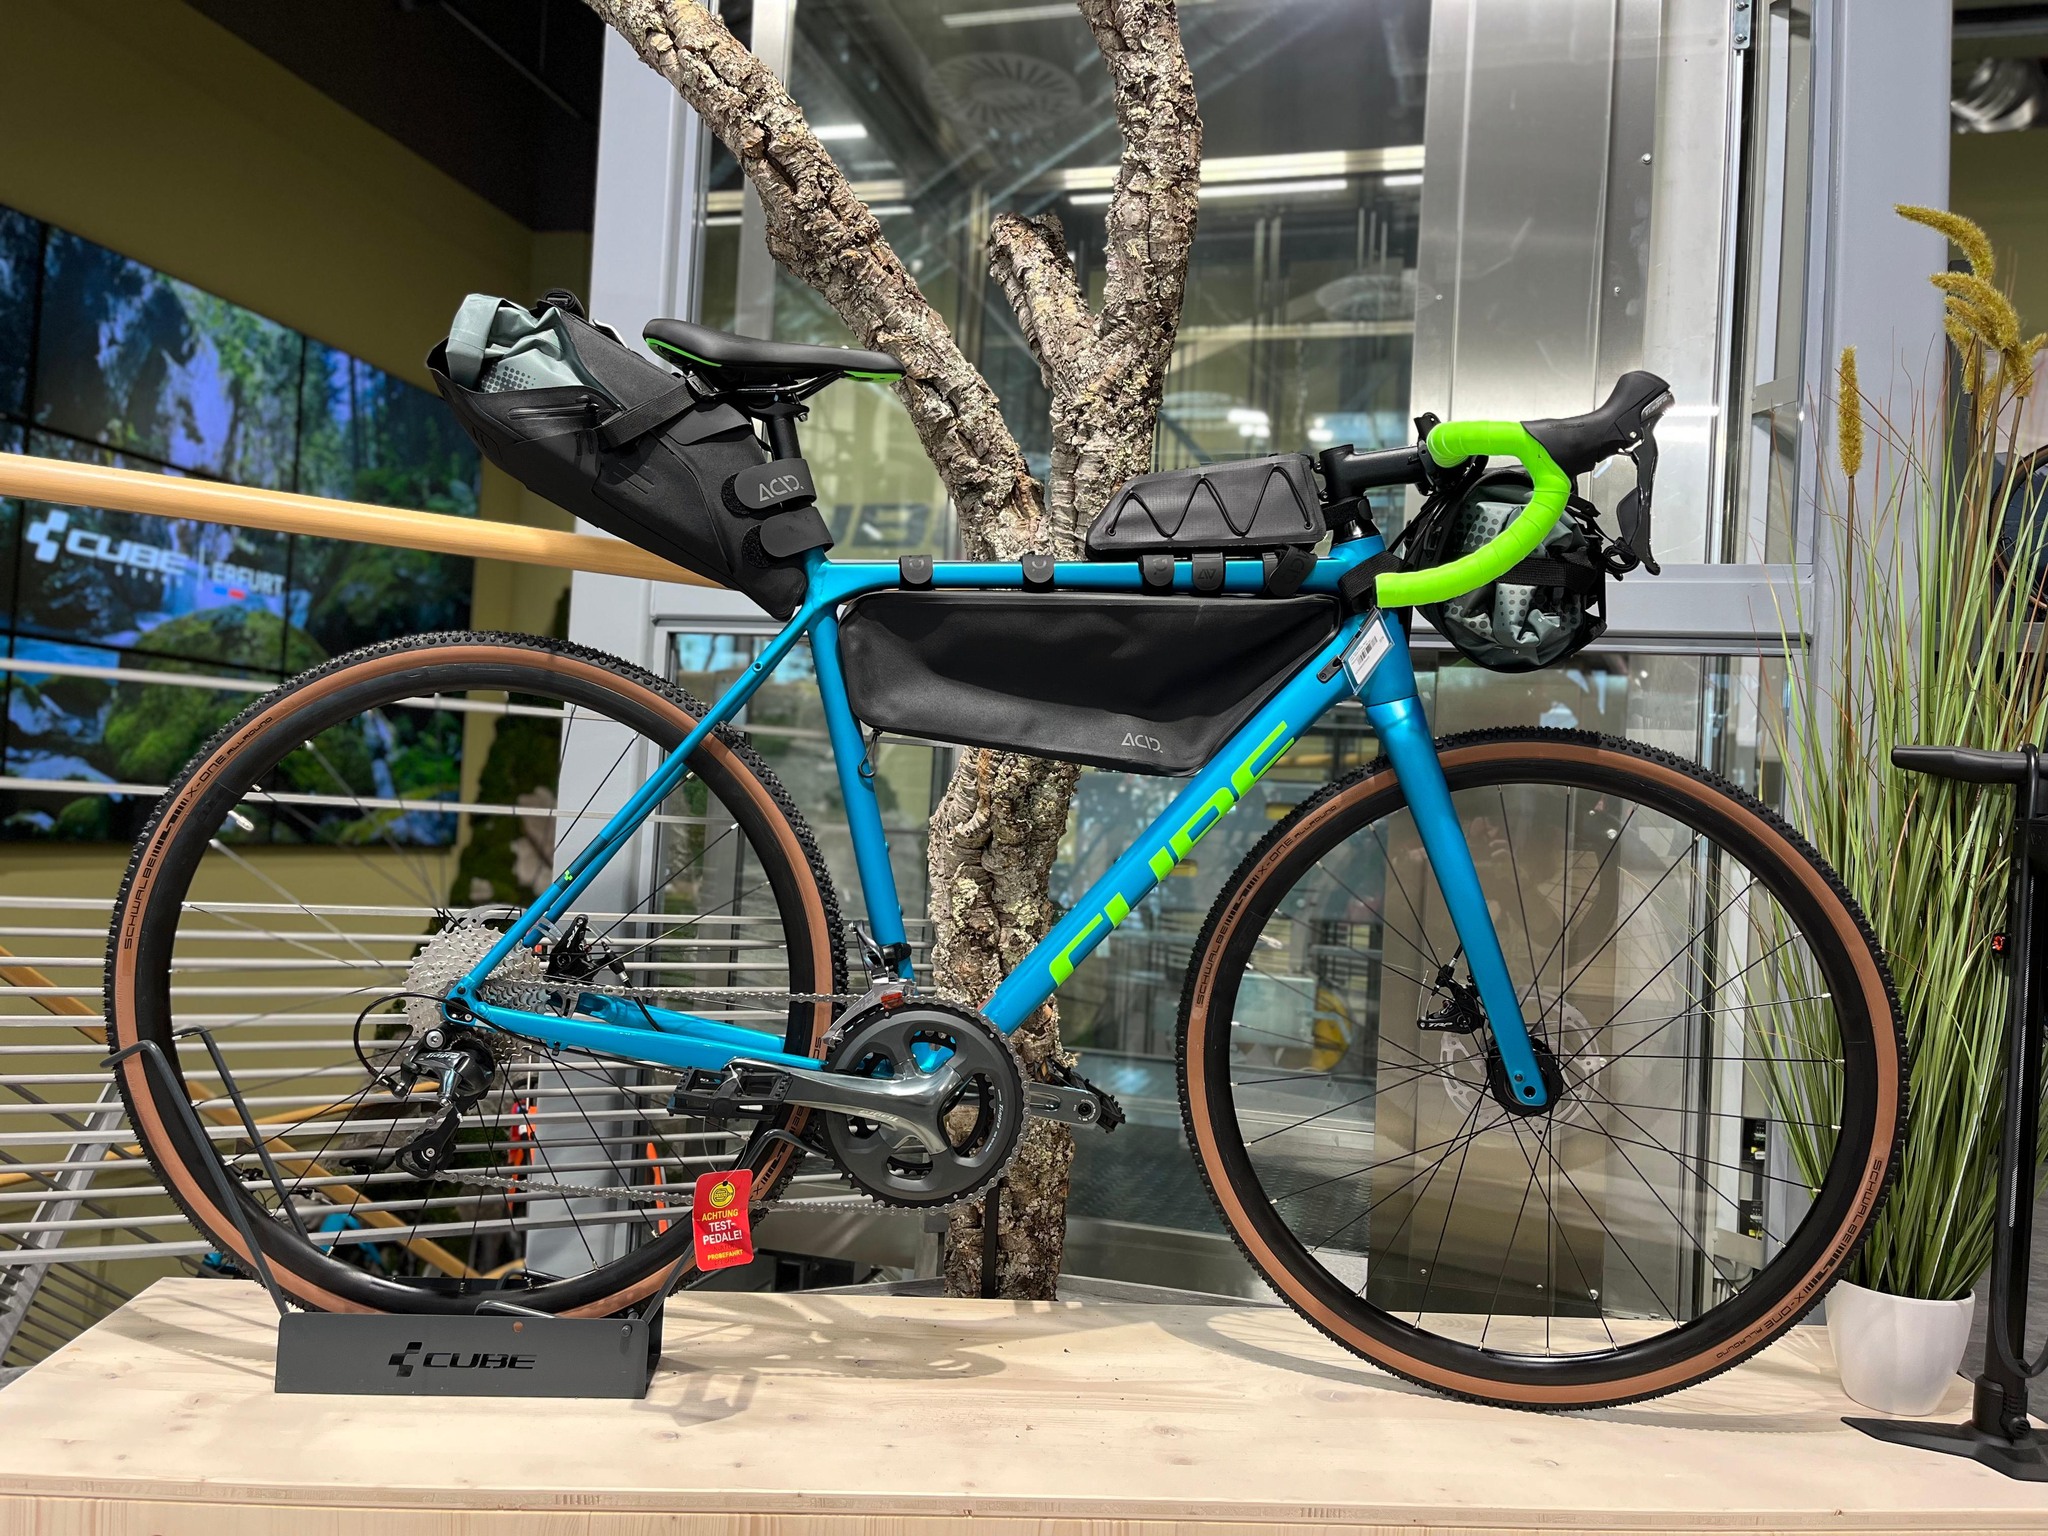 Ob in der Stadt oder bei Touren über Stock und Stein, wir haben die passende Tasche für dein Fahrrad. Schütze deine Kleidung &amp; Equipment auf dem Weg zur Arbeit oder beim nächsten bikepacking-Trip.